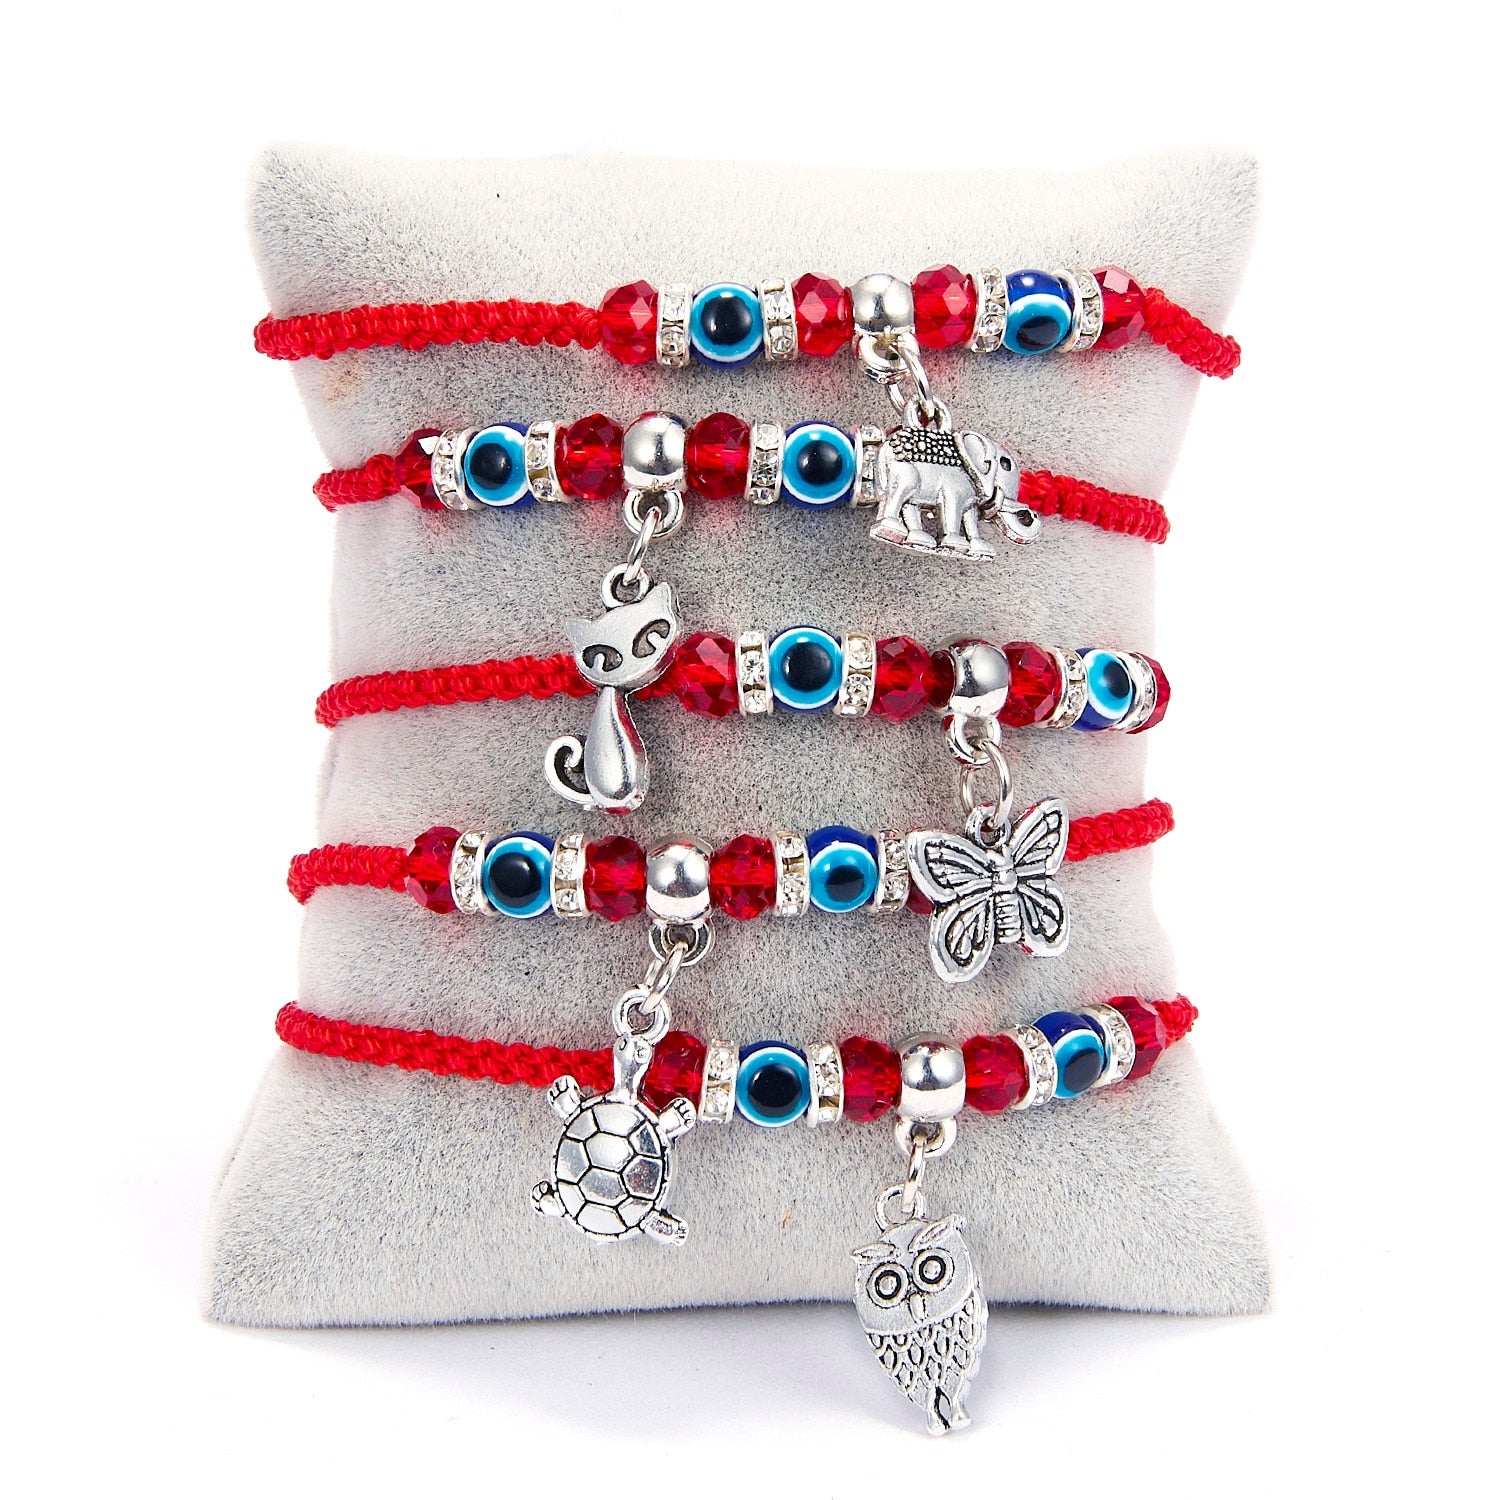 Rinhoo Lucky Red String Thread Hamsa Pendant Bracelet Blue Turkish Evil Eye Charm for Women Men Handmade Friendship Jewelry Gift